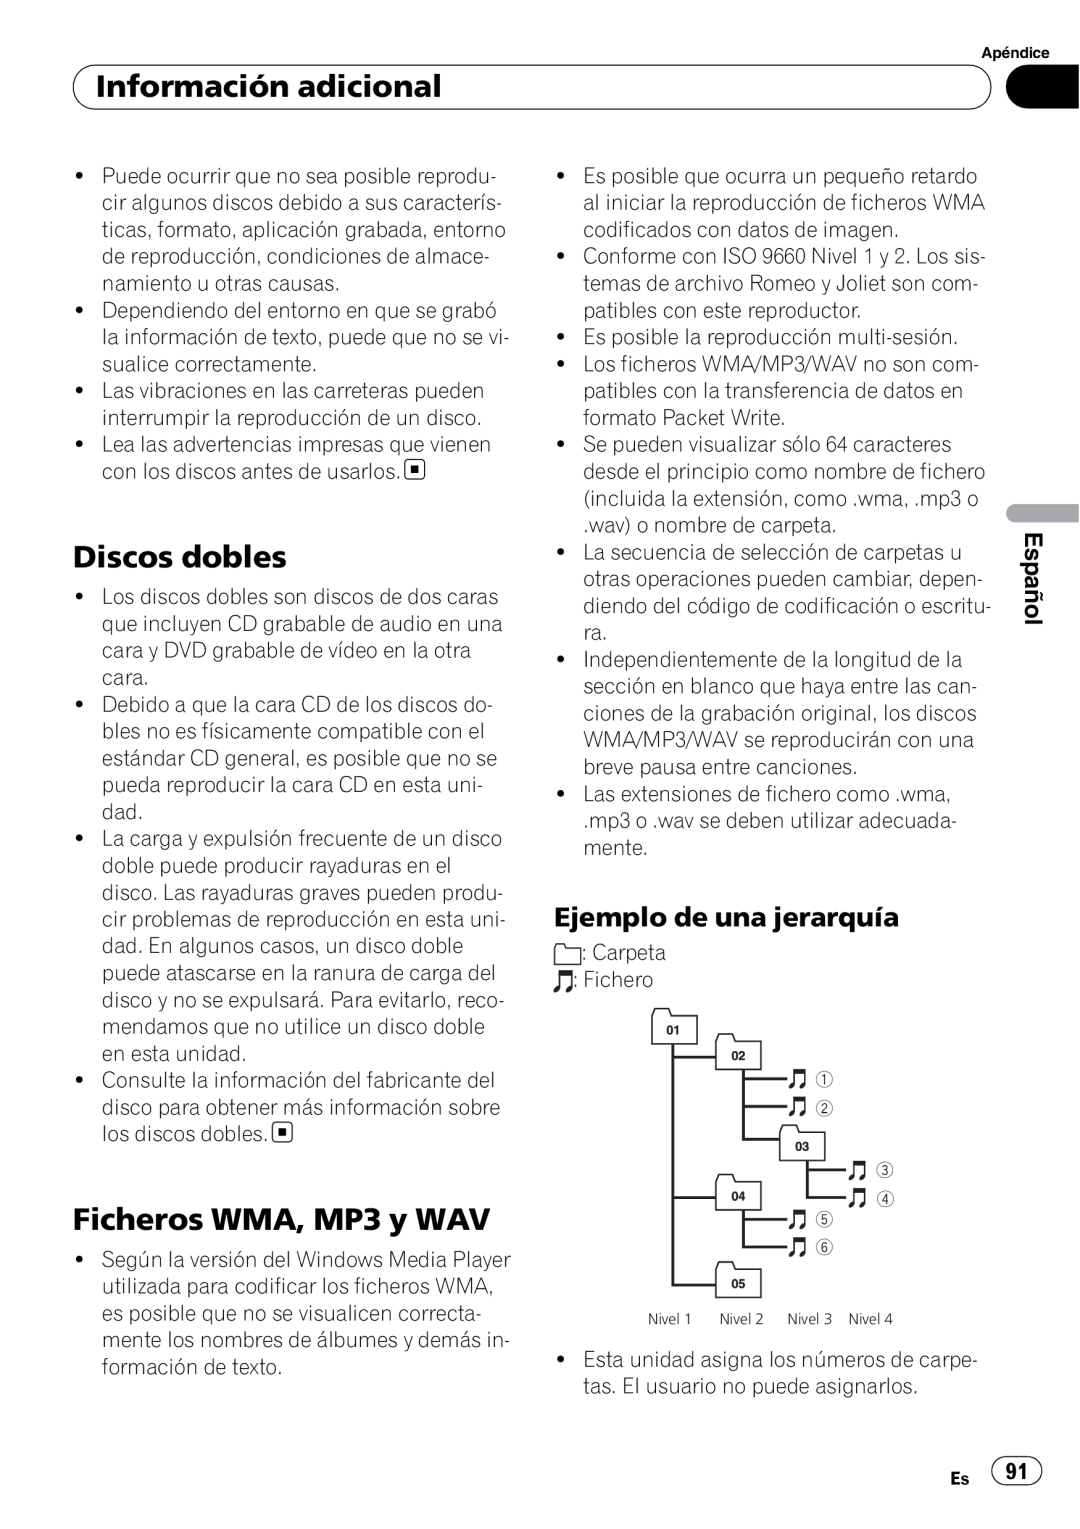 Sony DEH-P2900MP operation manual Discos dobles, Ficheros WMA, MP3 y WAV, Ejemplo de una jerarquía, Información adicional 